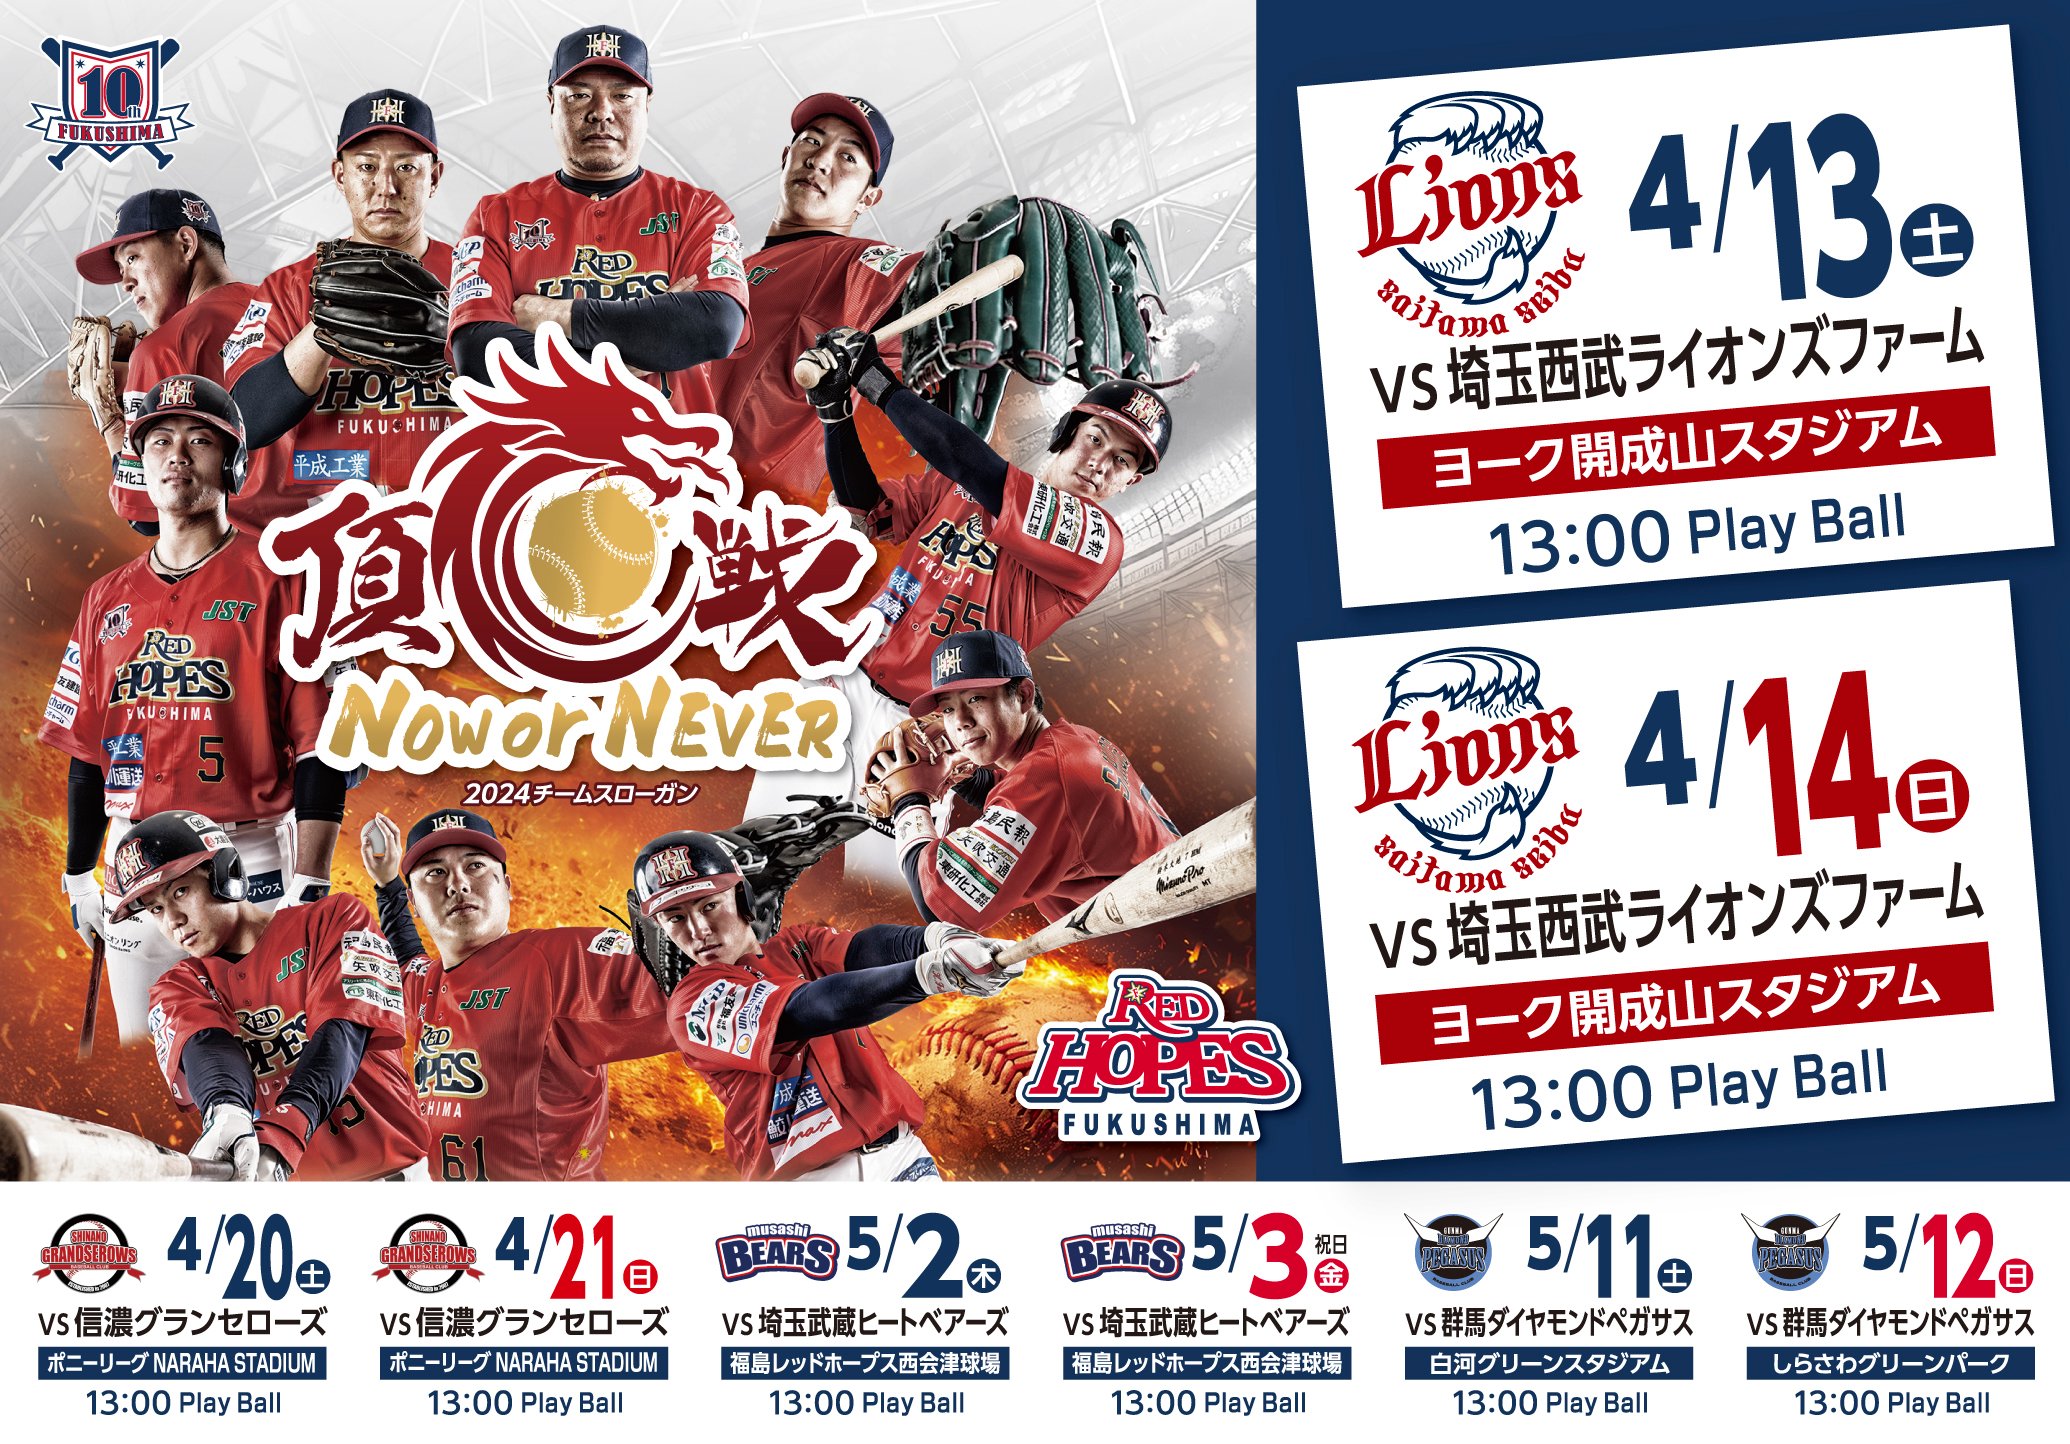 福島レッドホープスホーム戦共通チケット - 野球